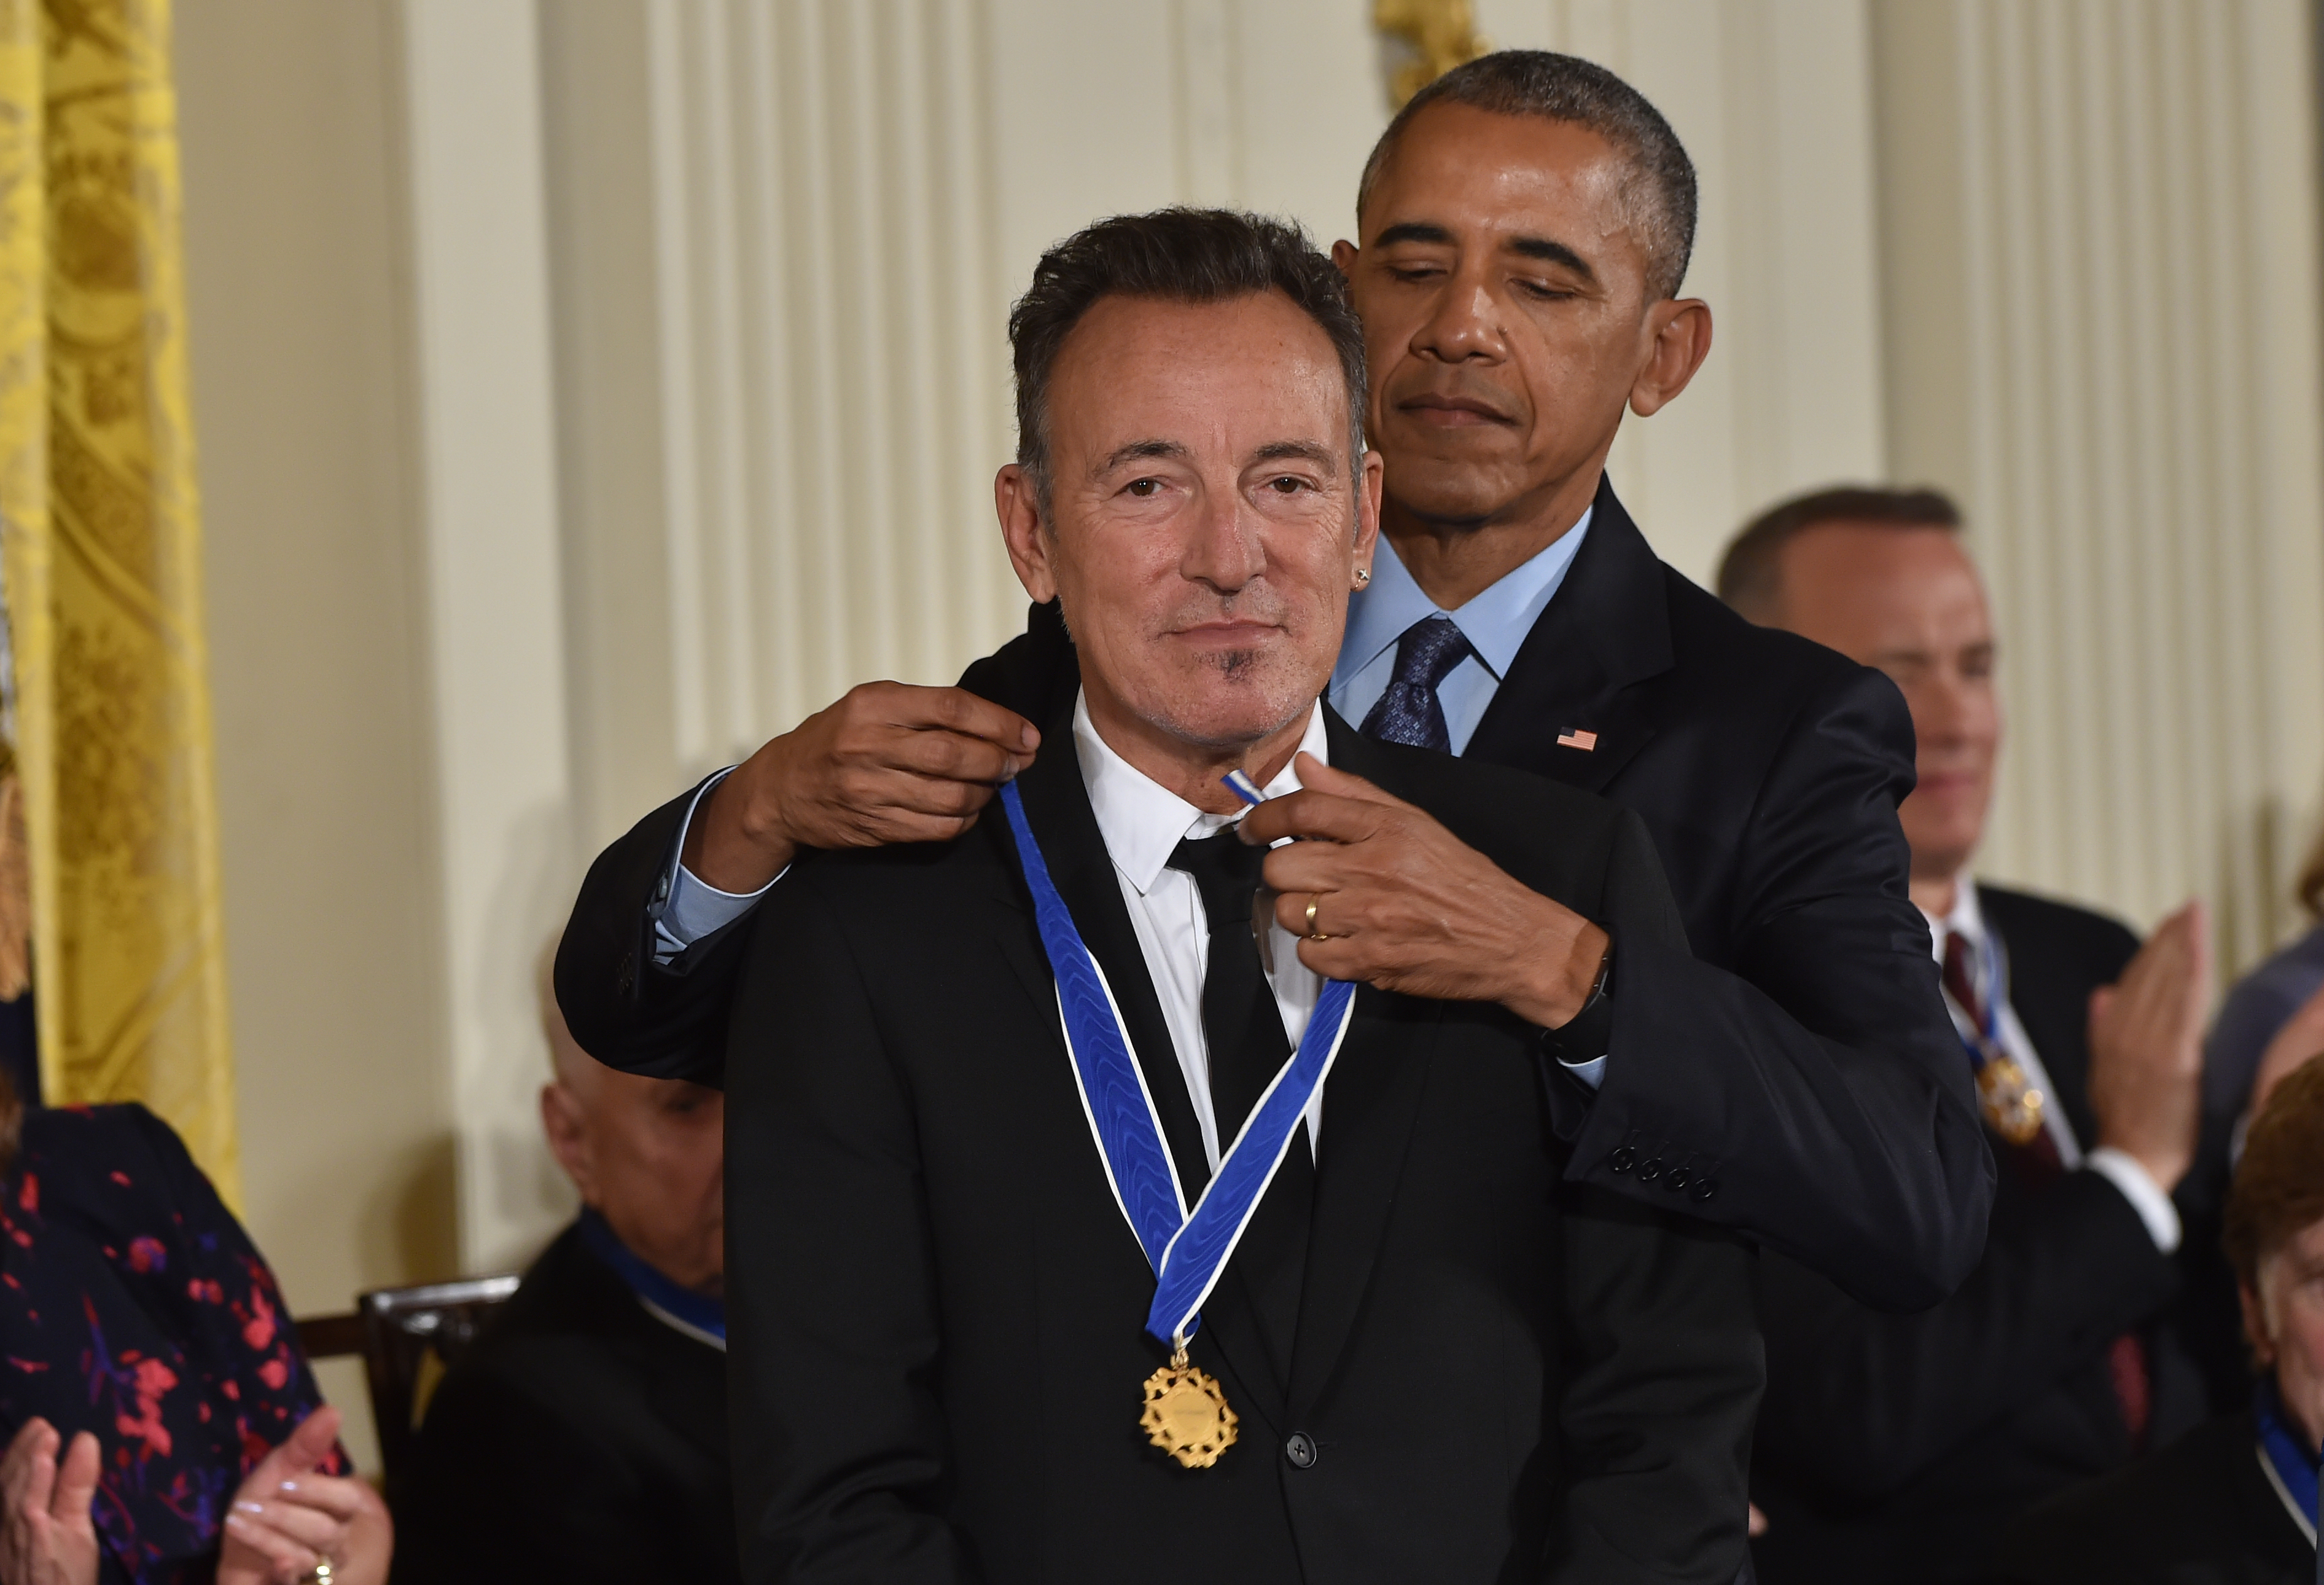 Bruce Springsteen búcsúkoncertet adott Obamának a Fehér Házban